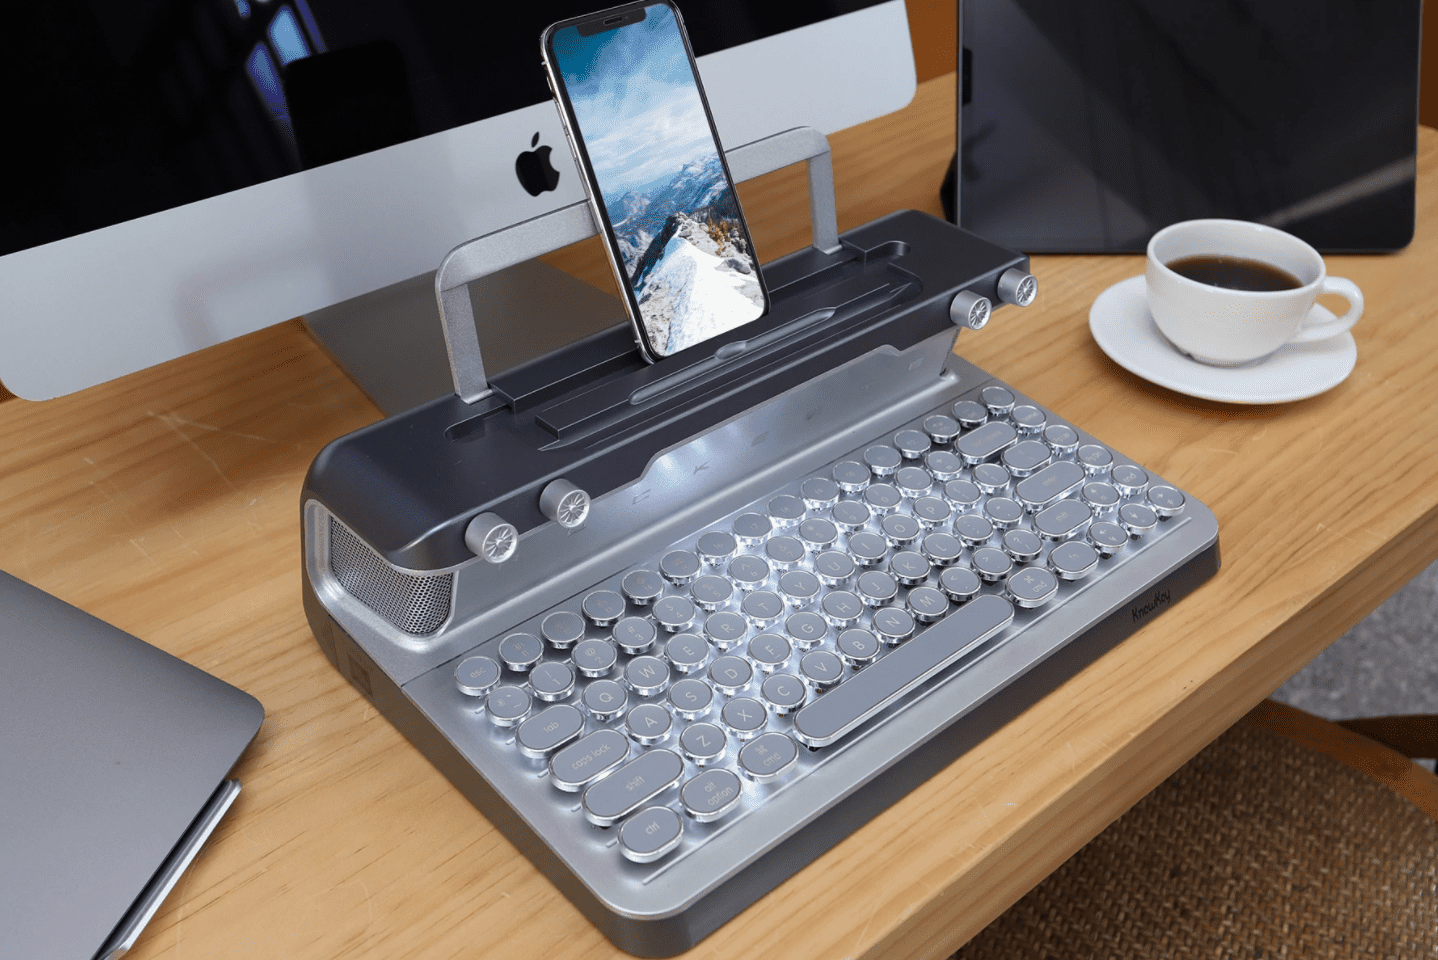 Este é um teclado retrô que parece uma máquina de escrever e tem caixa de som JBL embutida